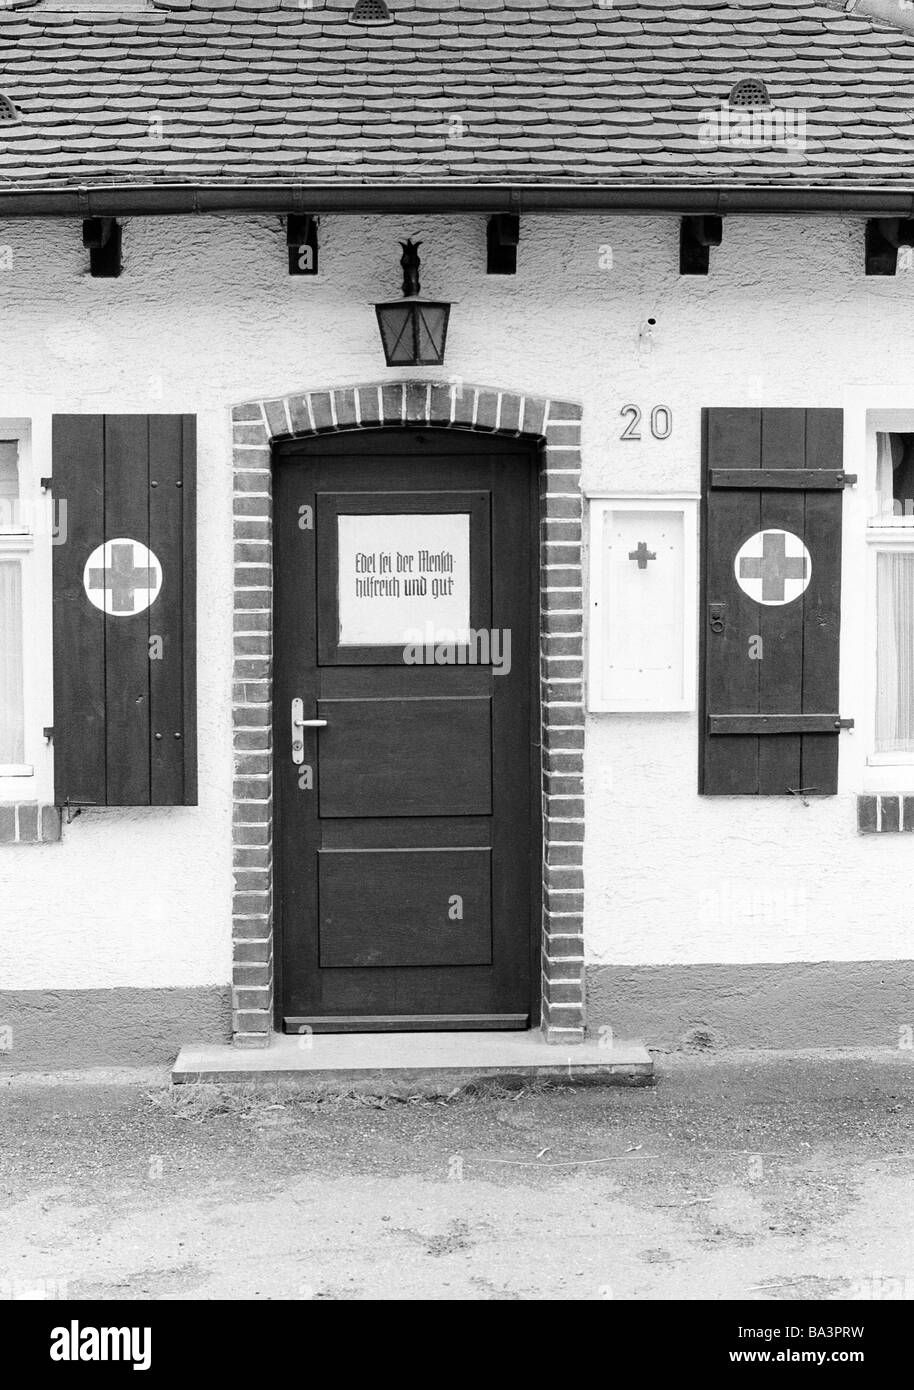 Années 1980, photo en noir et blanc, l'organisation de l'aide, porte d'entrée, volets roulants, d'une zone d'entrée de la station, secouristes Croix-Rouge allemande, Bade-Wurtemberg Banque D'Images